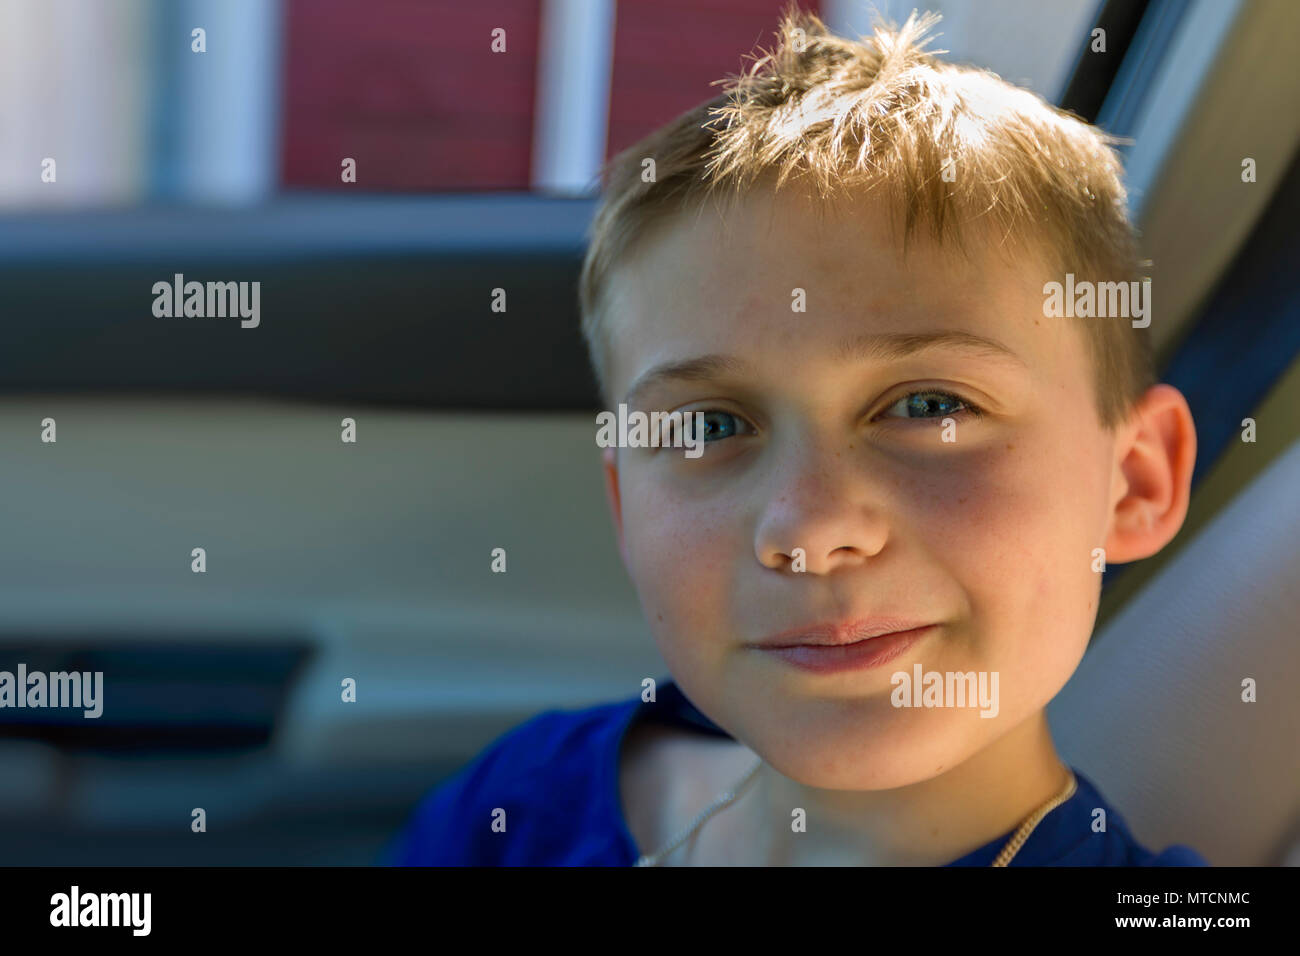 Voir portrait de jeune garçon de 10 ans dans le siège passager de voiture à and smiling at camera Banque D'Images